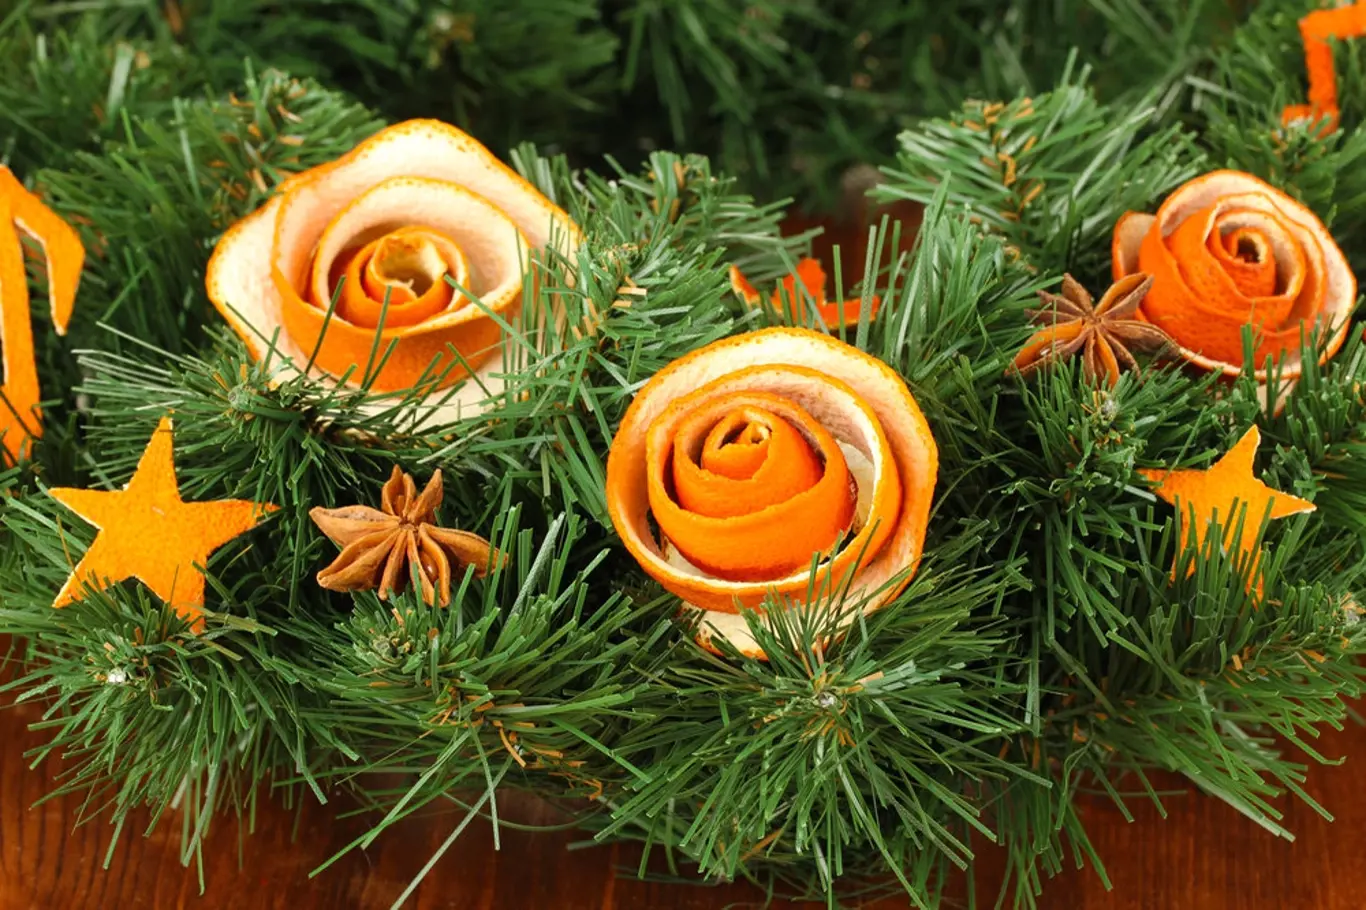 Růžičky zhotovené z pomerančové kůry.